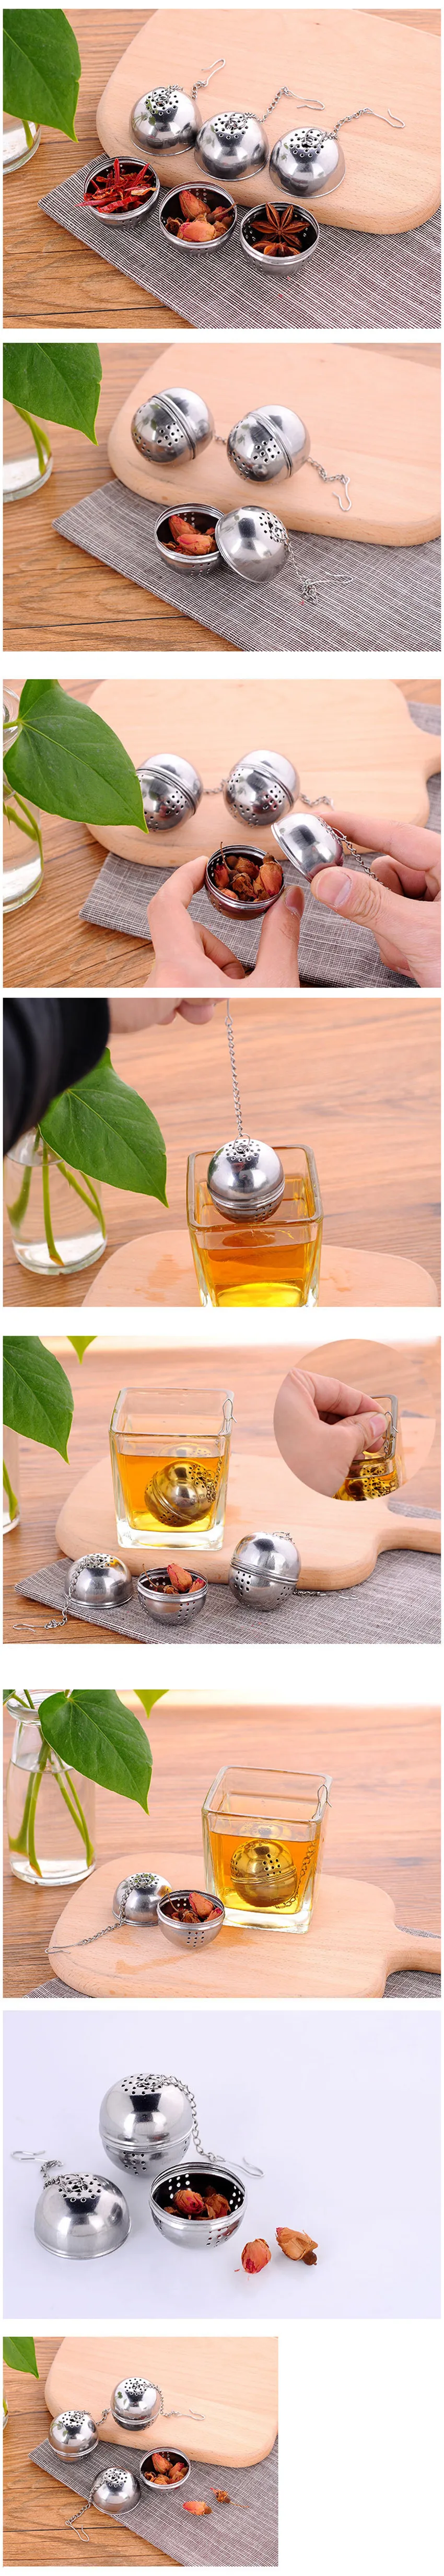 Нержавеющая сталь шаровая сетка для заварки чая фильтр ситечко w/крюк Свободный чай лист специй шар с веревкой цепи дома кухонные инструменты